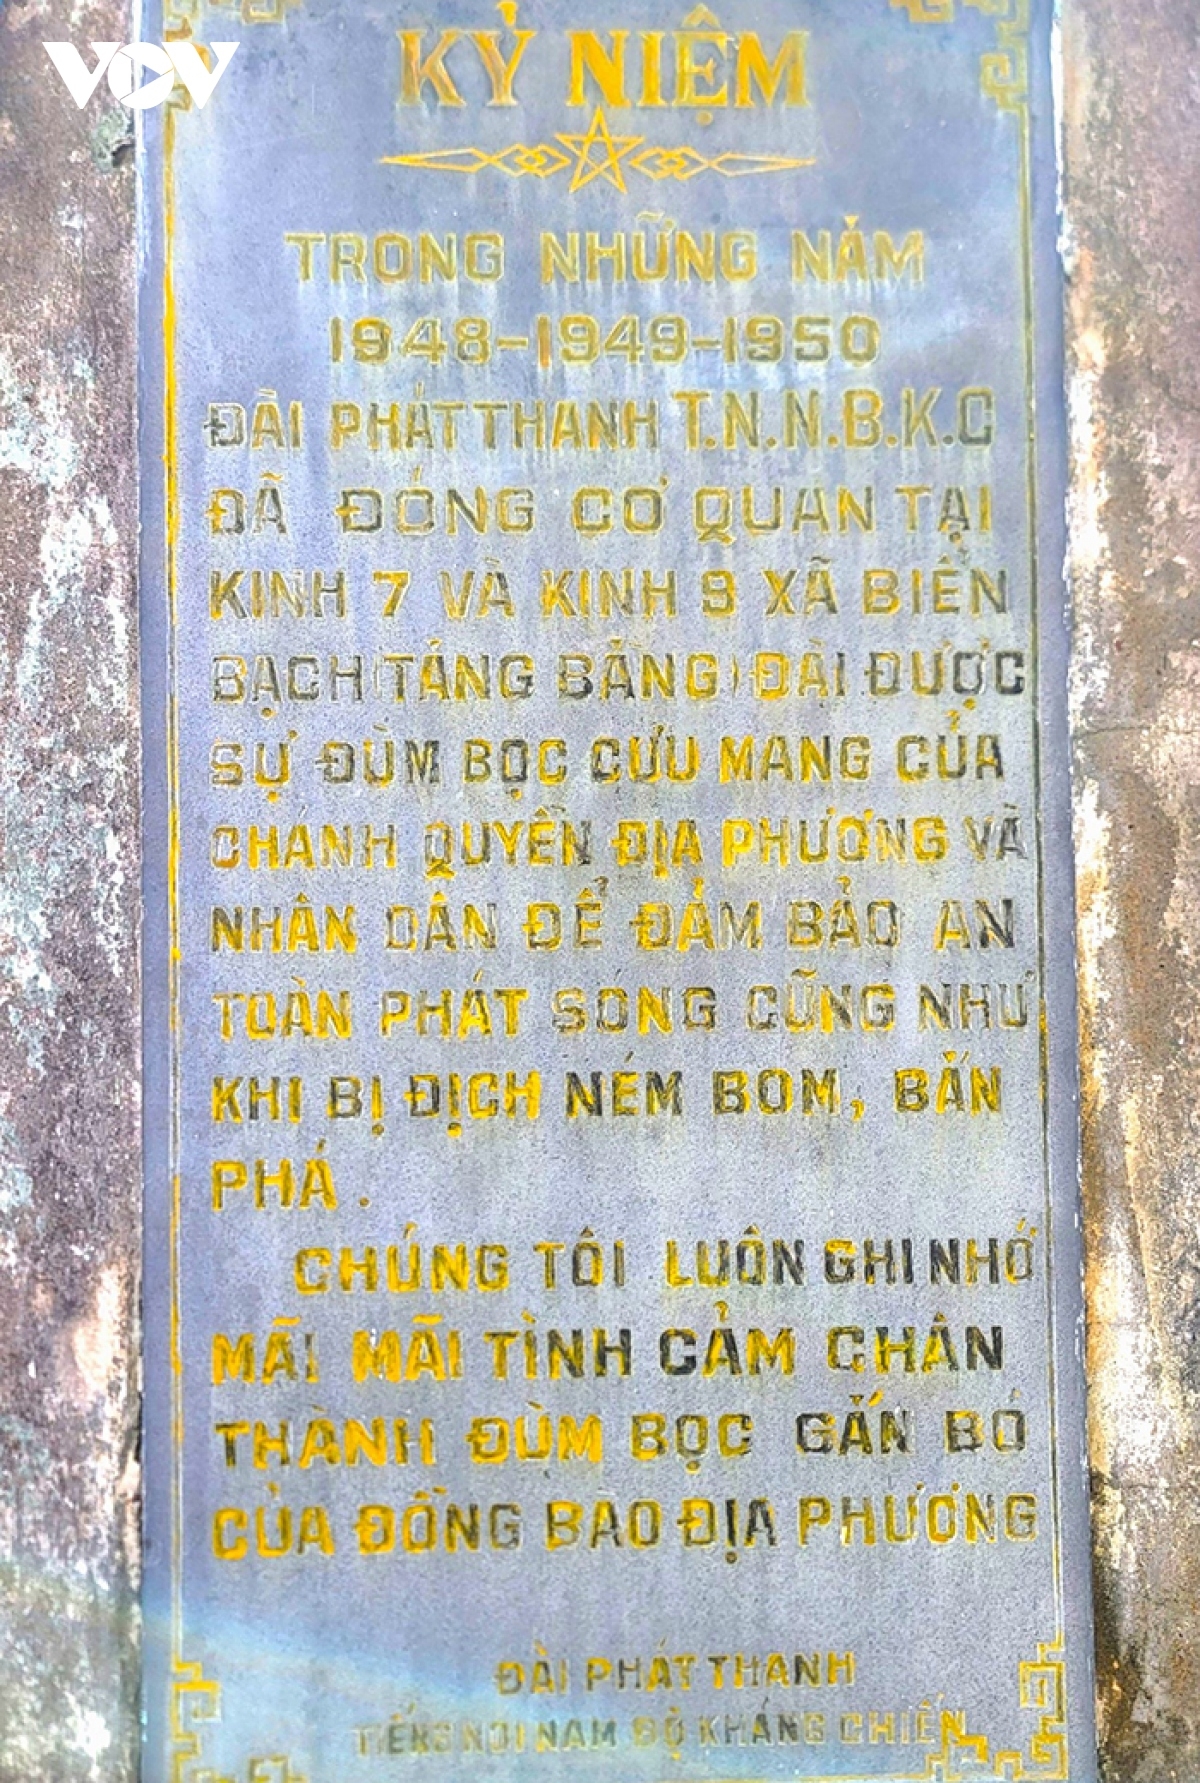 
Tại xã Tân Bằng có bia kỷ niệm của Đài phát sóng Nam bộ Kháng chiến